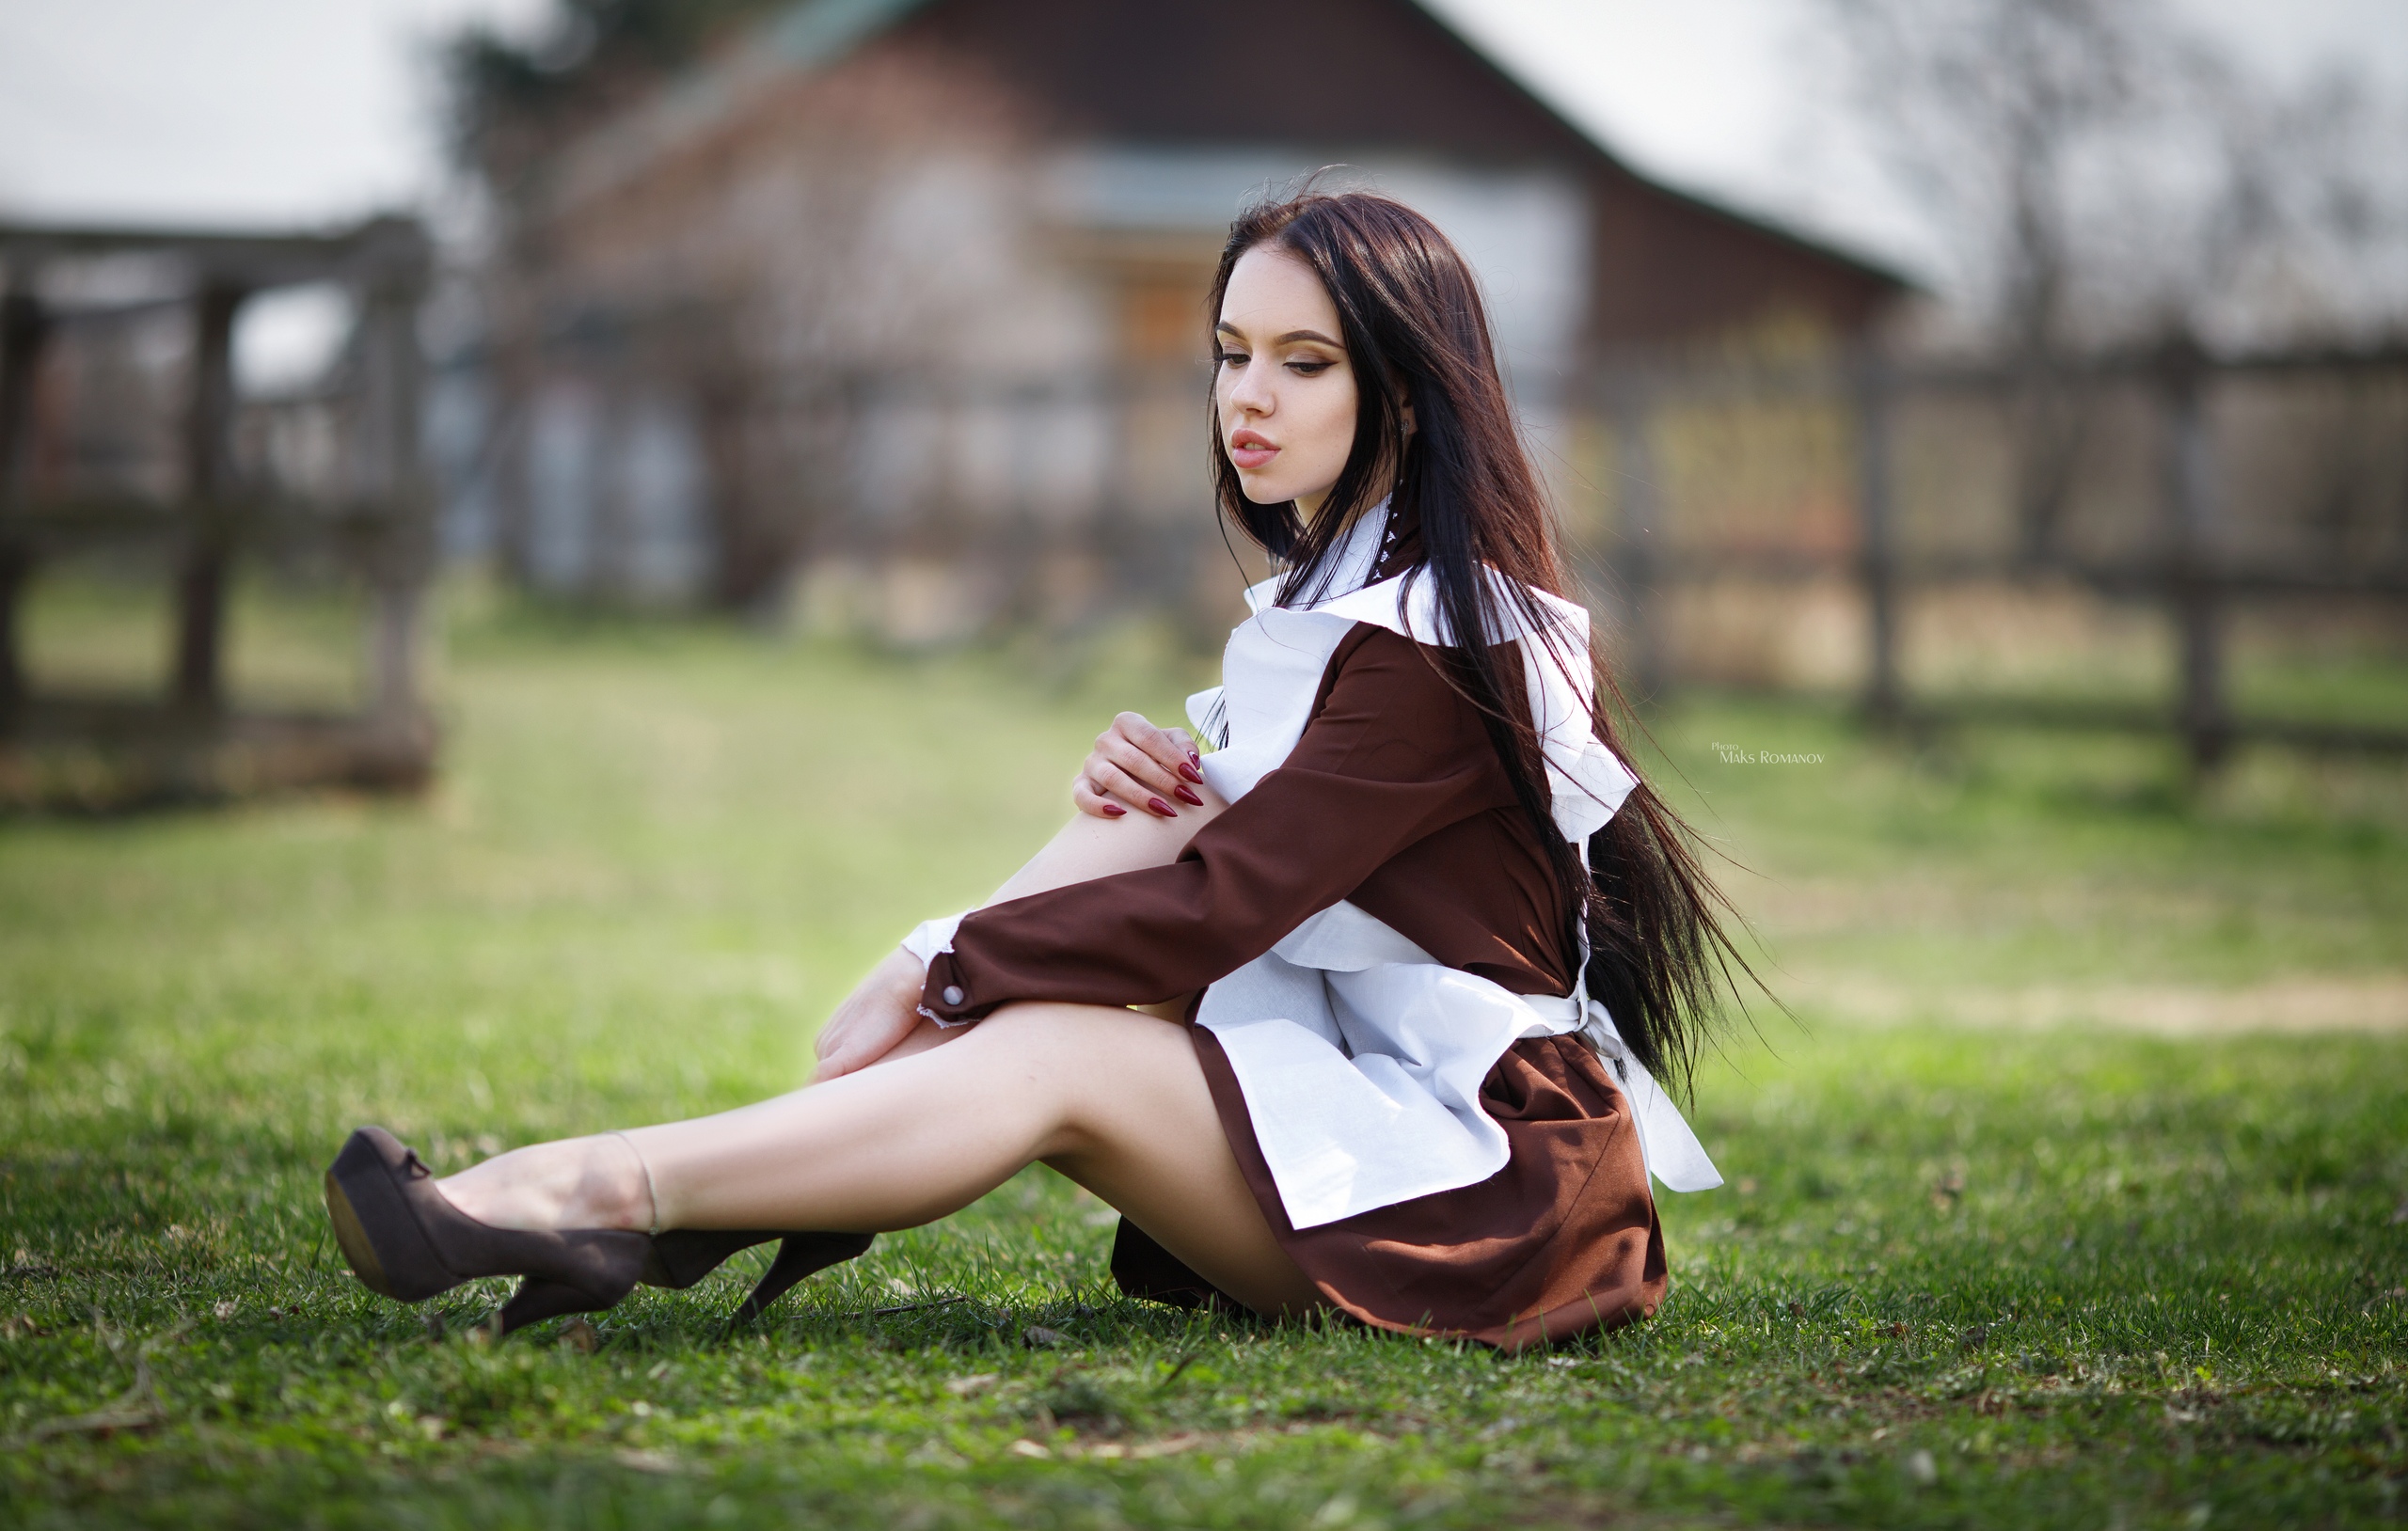 Irina Sirina Women Model Brunette Long Hair Looking Away Dress Apron Sitting High Heels Grass Outdoo 2560x1628